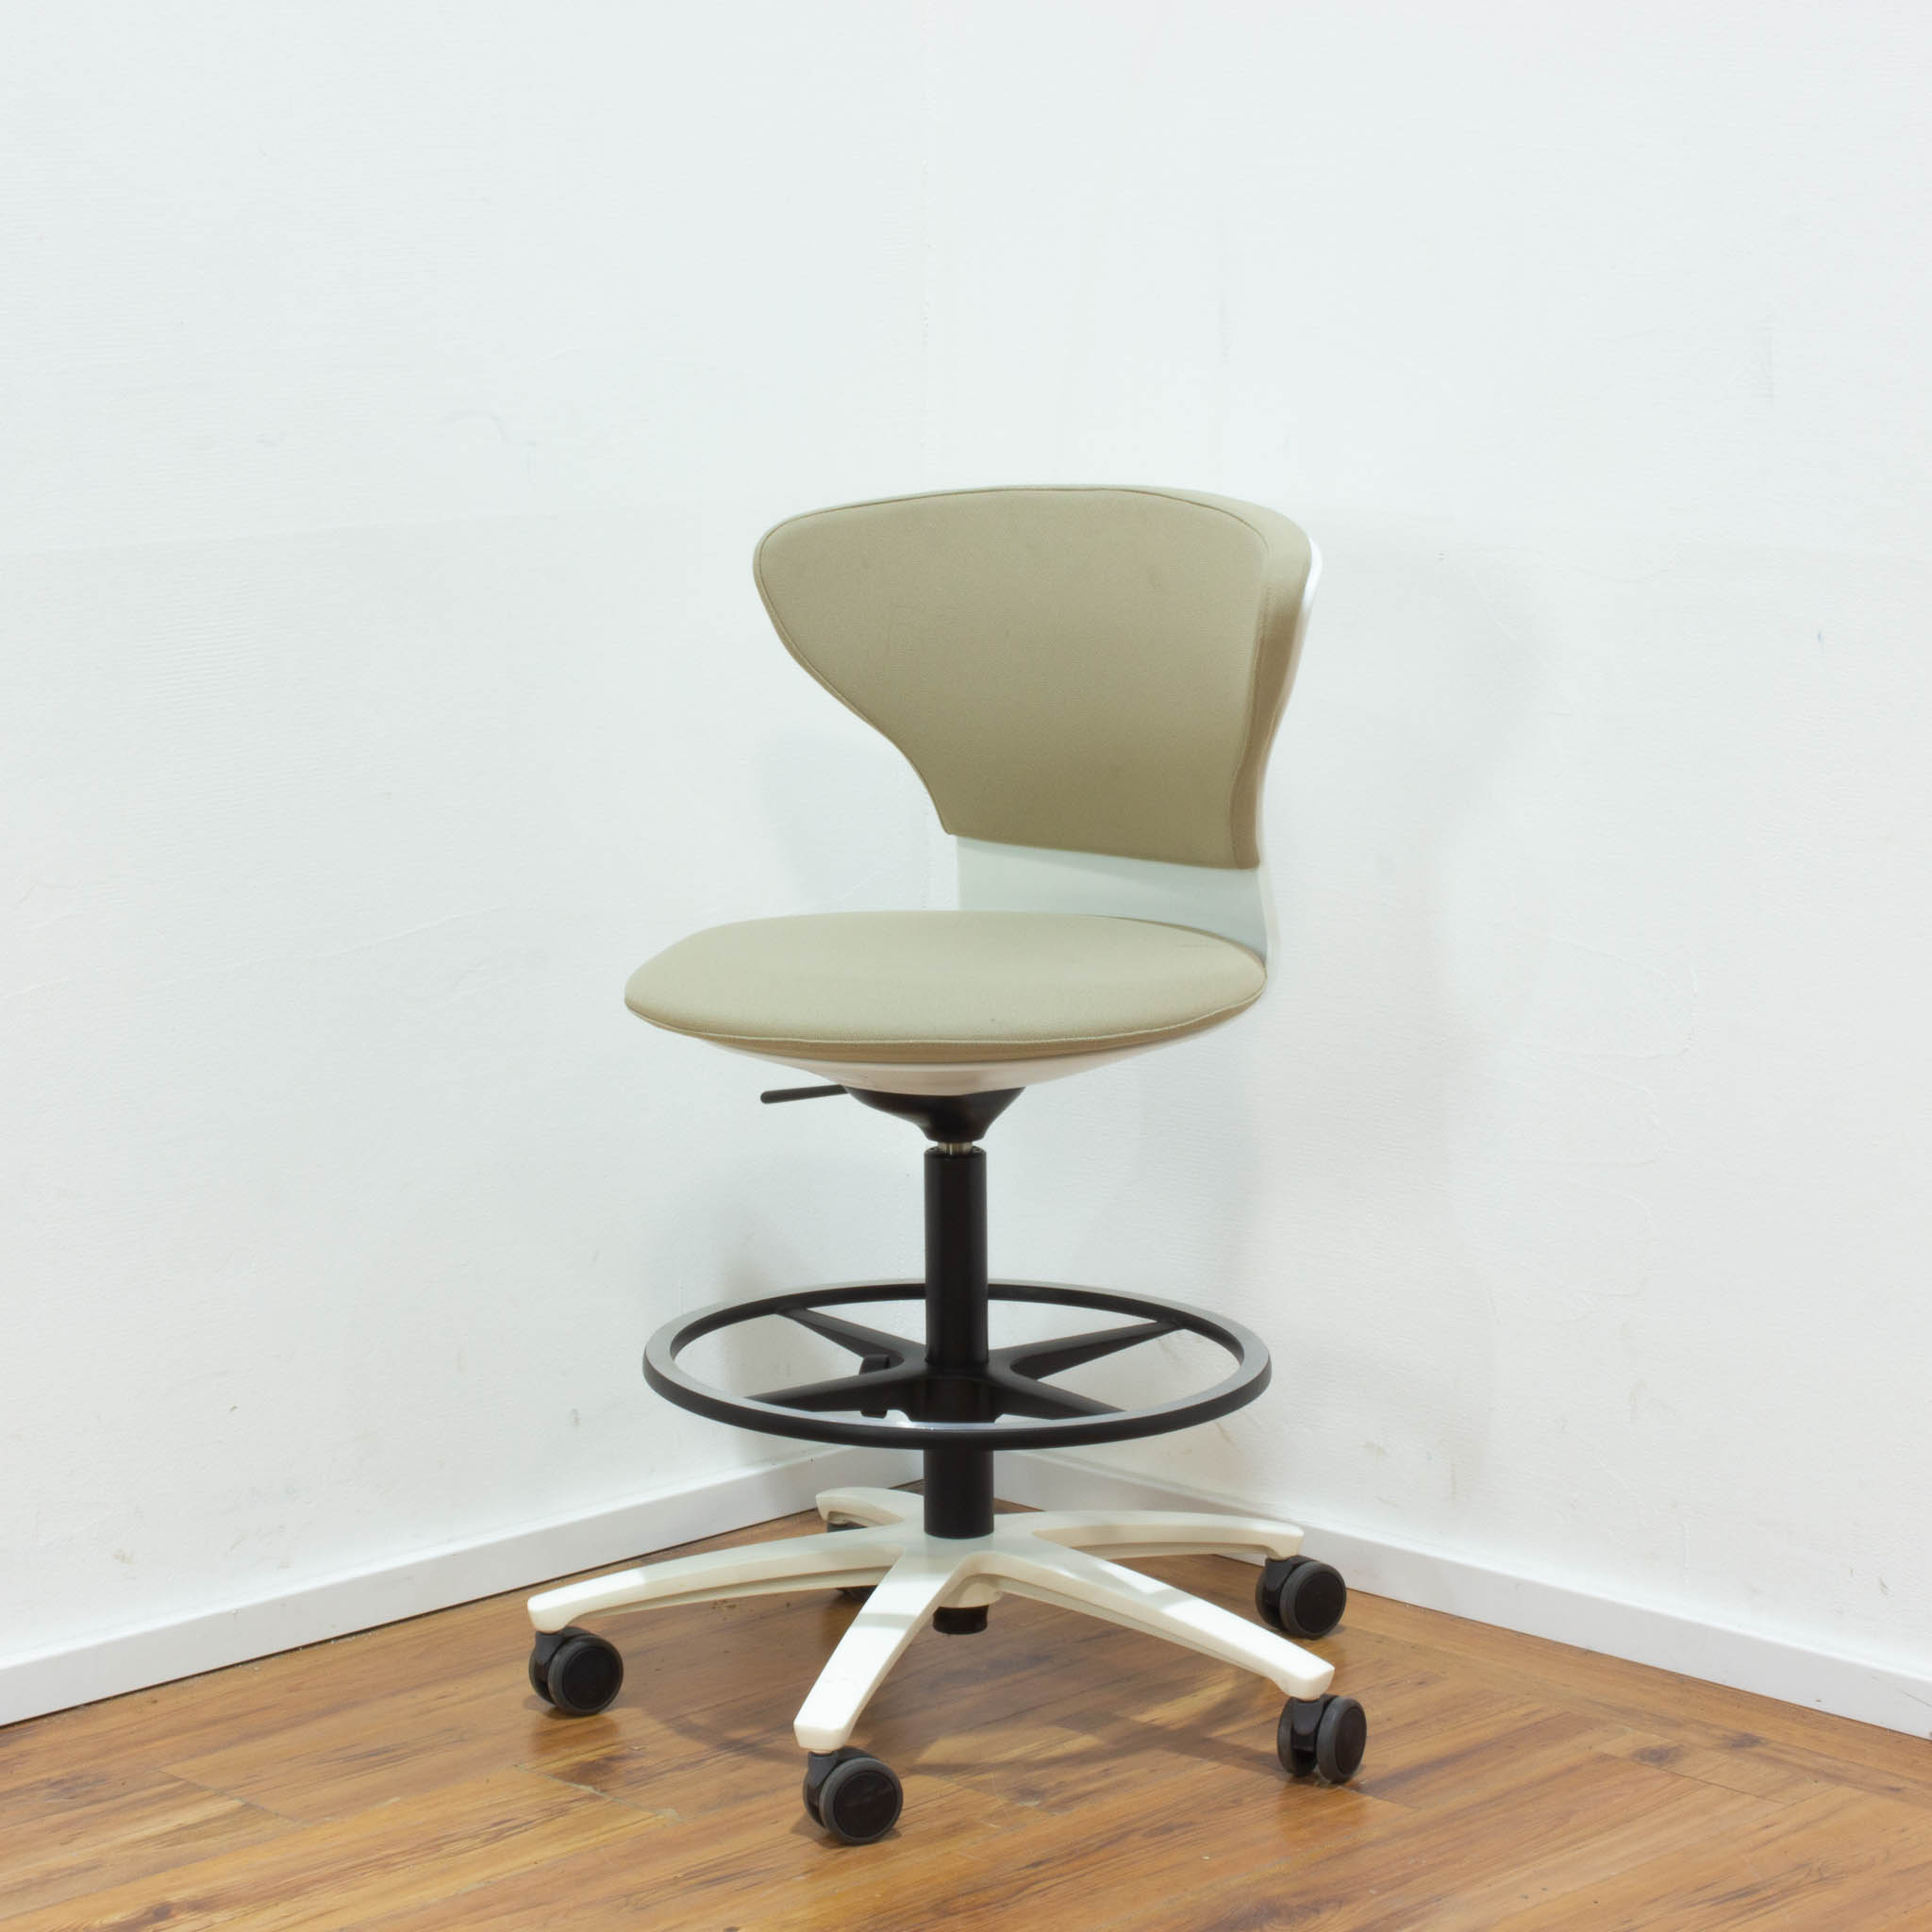 Sedus "Turn Around" High Desk Chair - beige